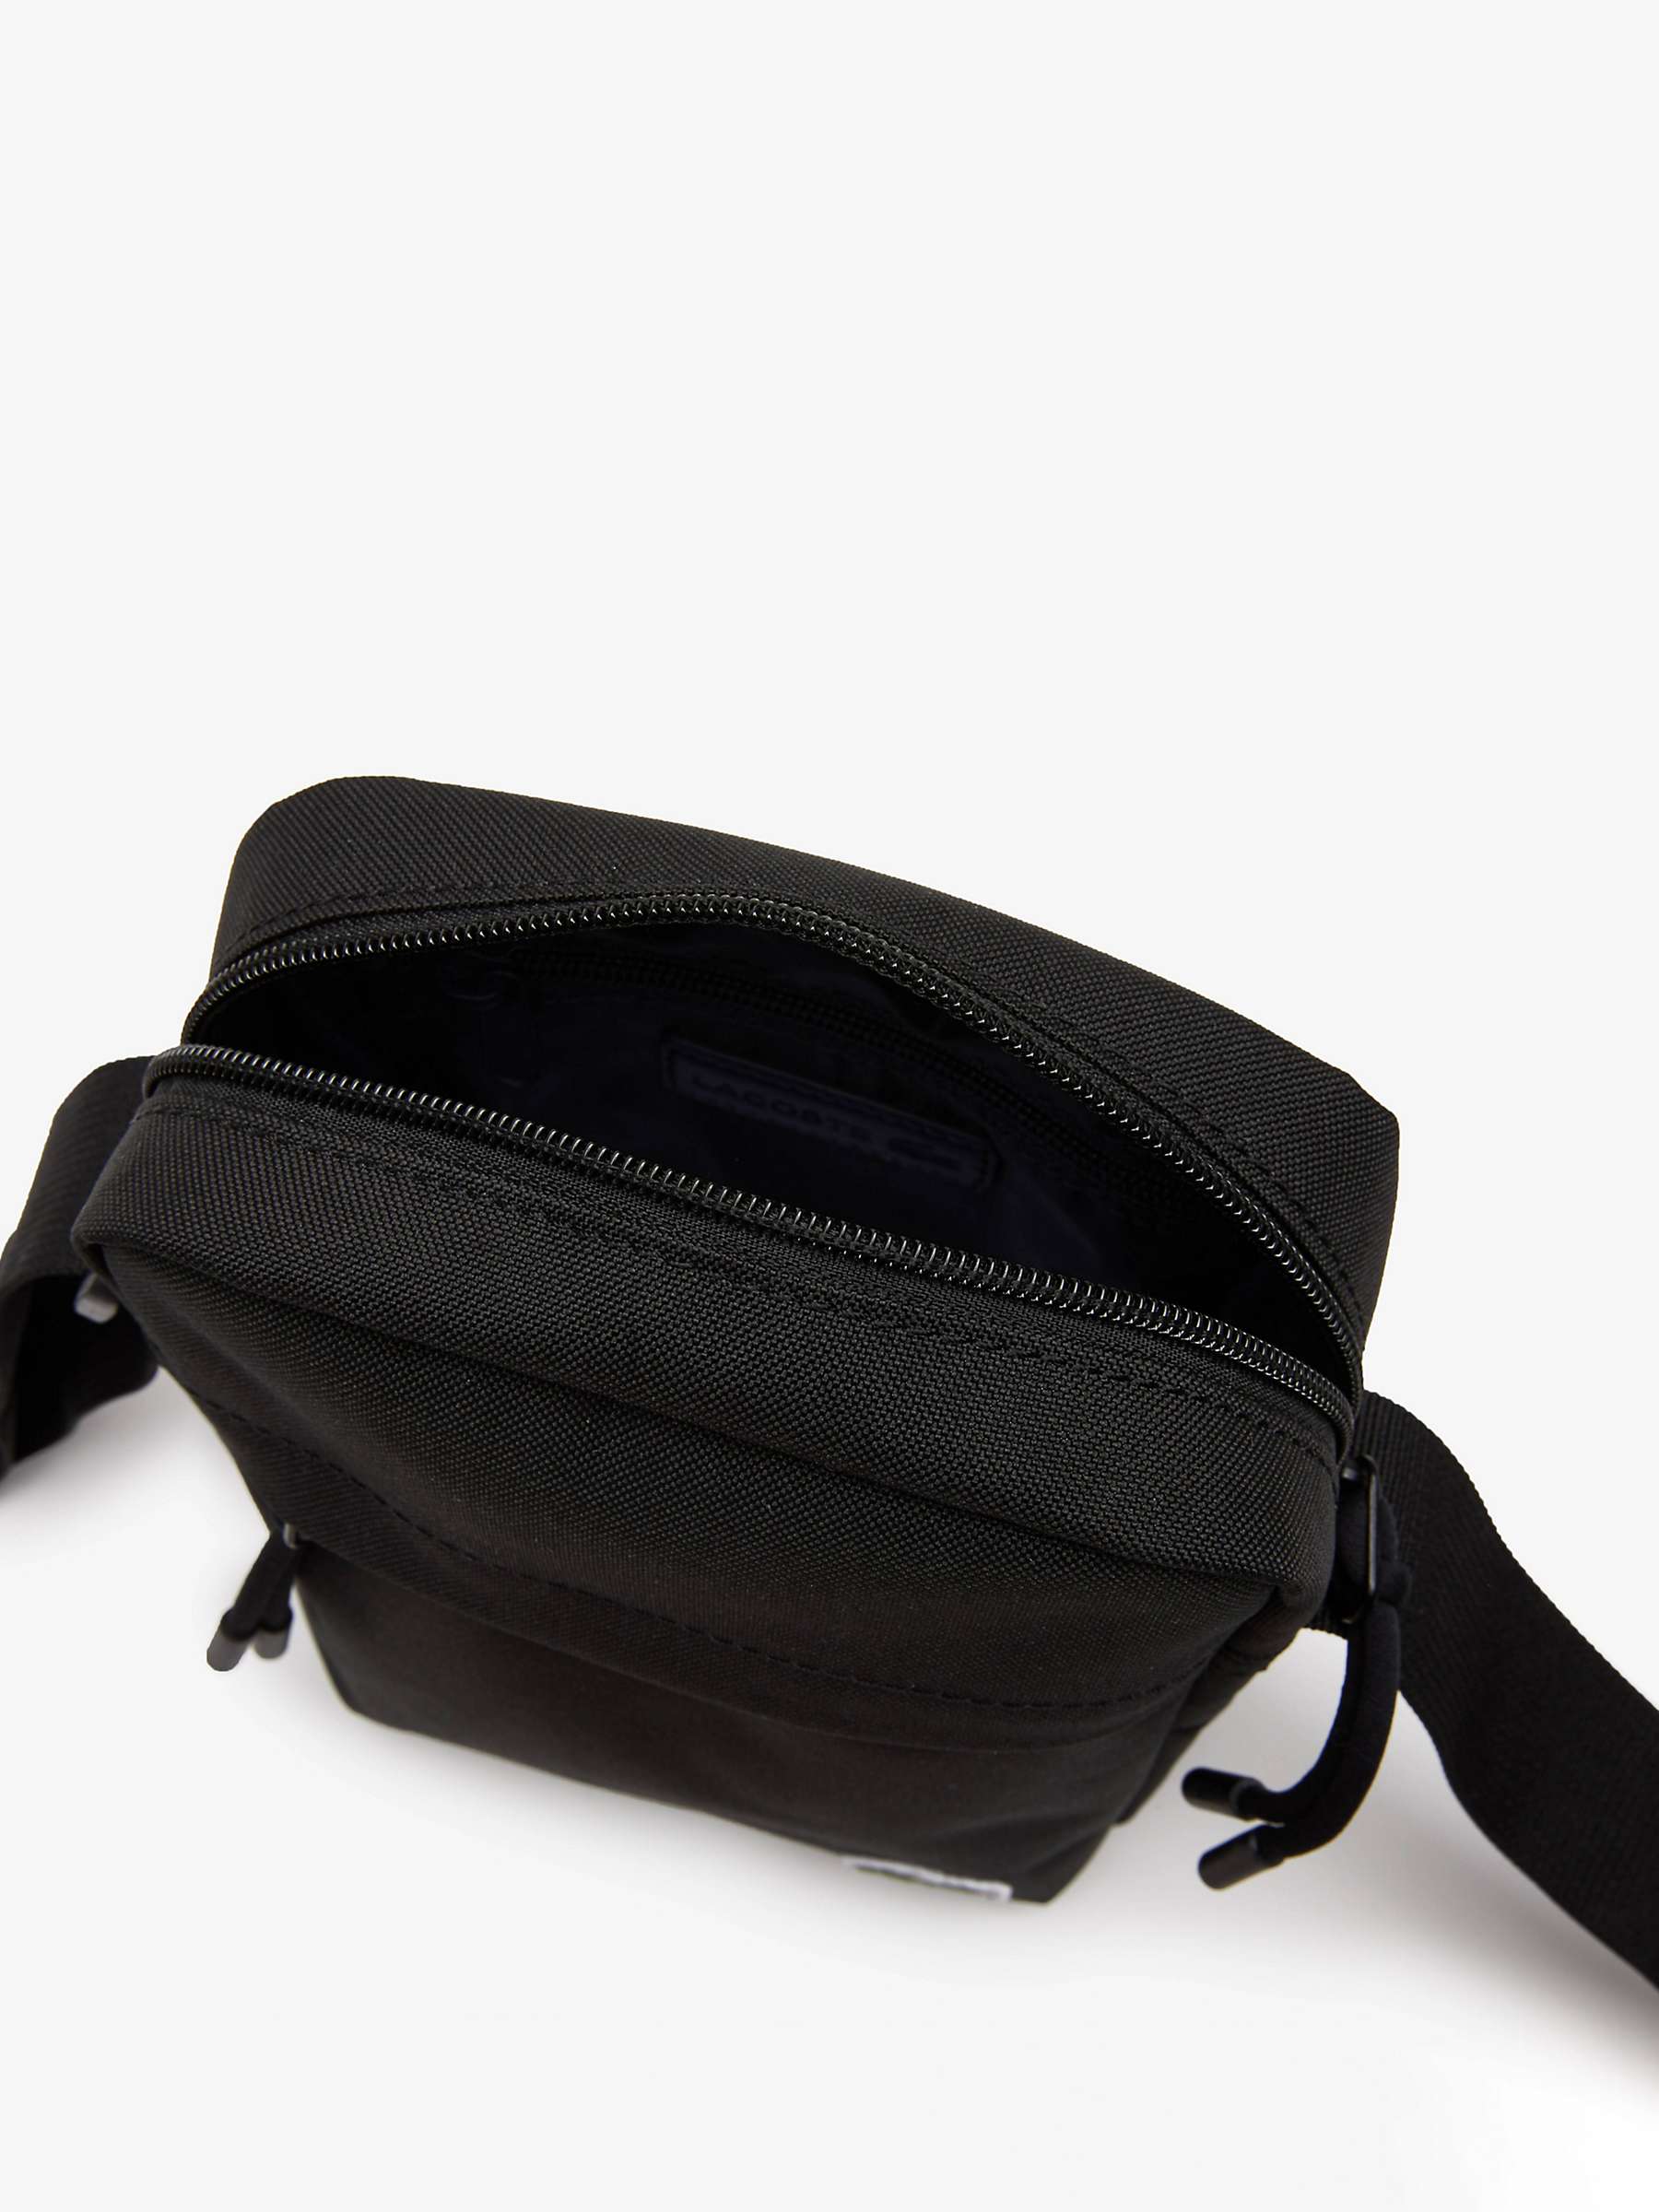 Buy Lacoste Zip Cross Body Bag Online at johnlewis.com